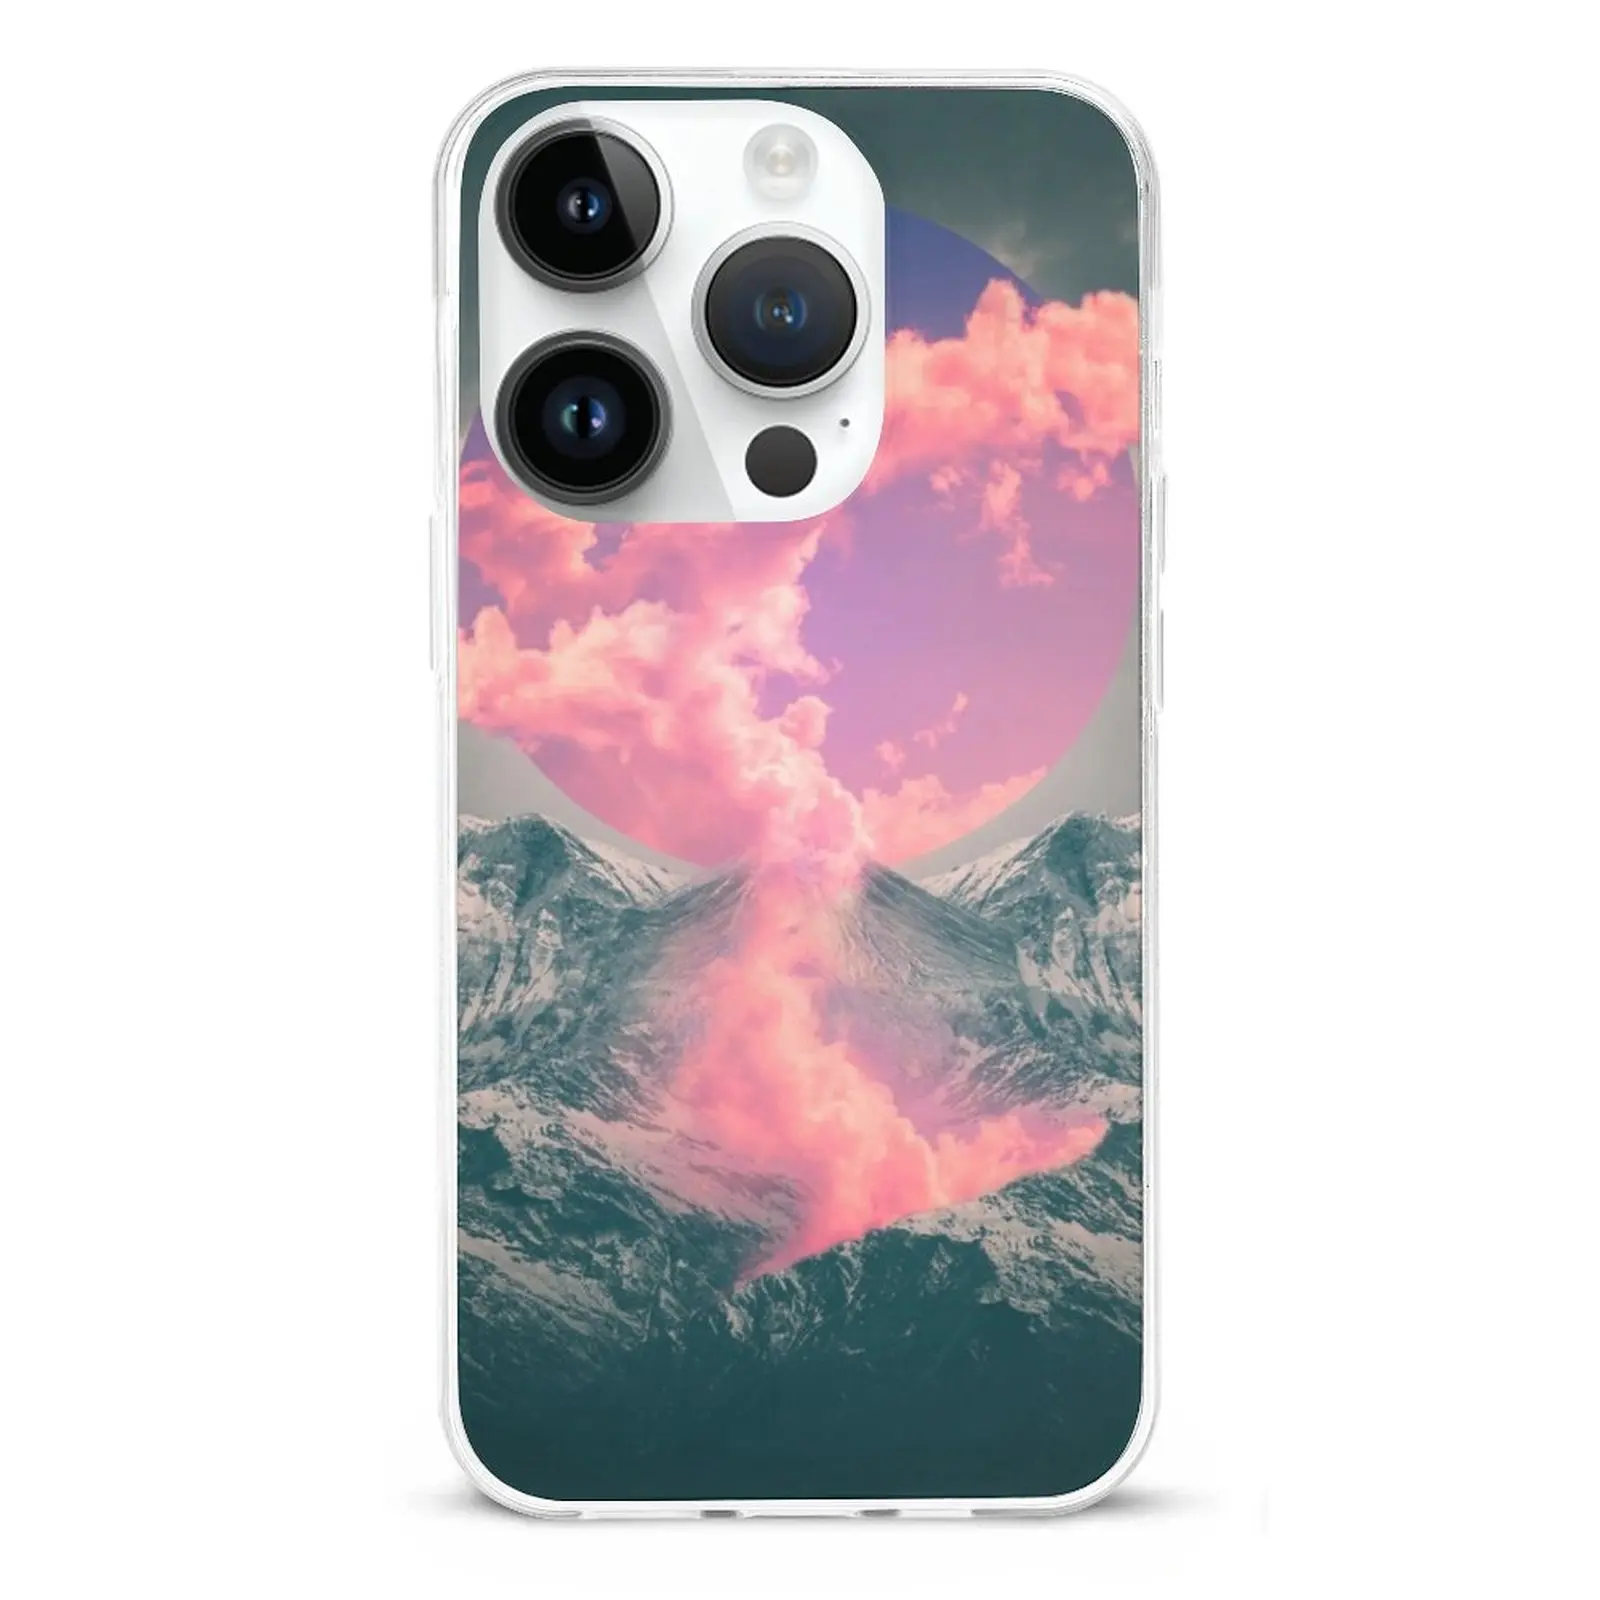 Разорванный Чехол Soul Fiber Skin Case Для Iphone 11 12 13 14 Pro Max Mini Xr 7 8 Plus Чехлы Покрывают Вулкан Облака Горы Извергаются Изображение 2